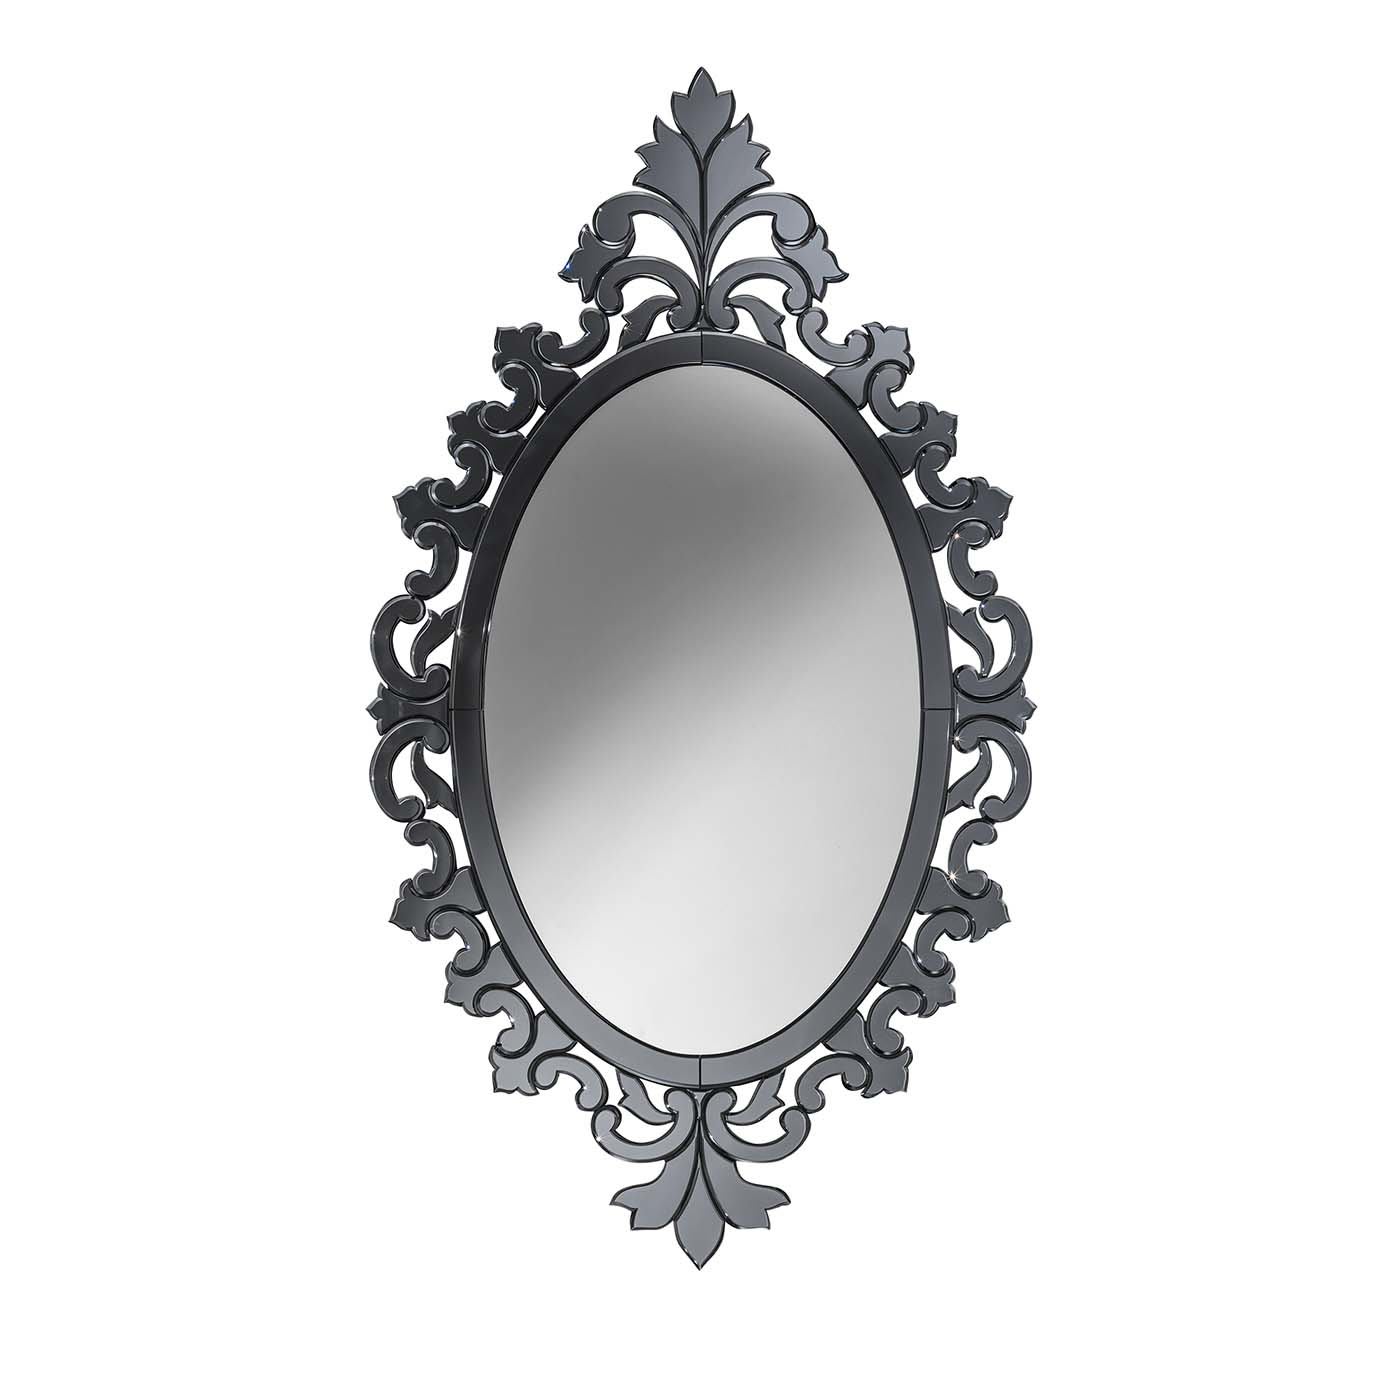 Specchio Delle Mie Brame Mirror - Ongaro & Fuga